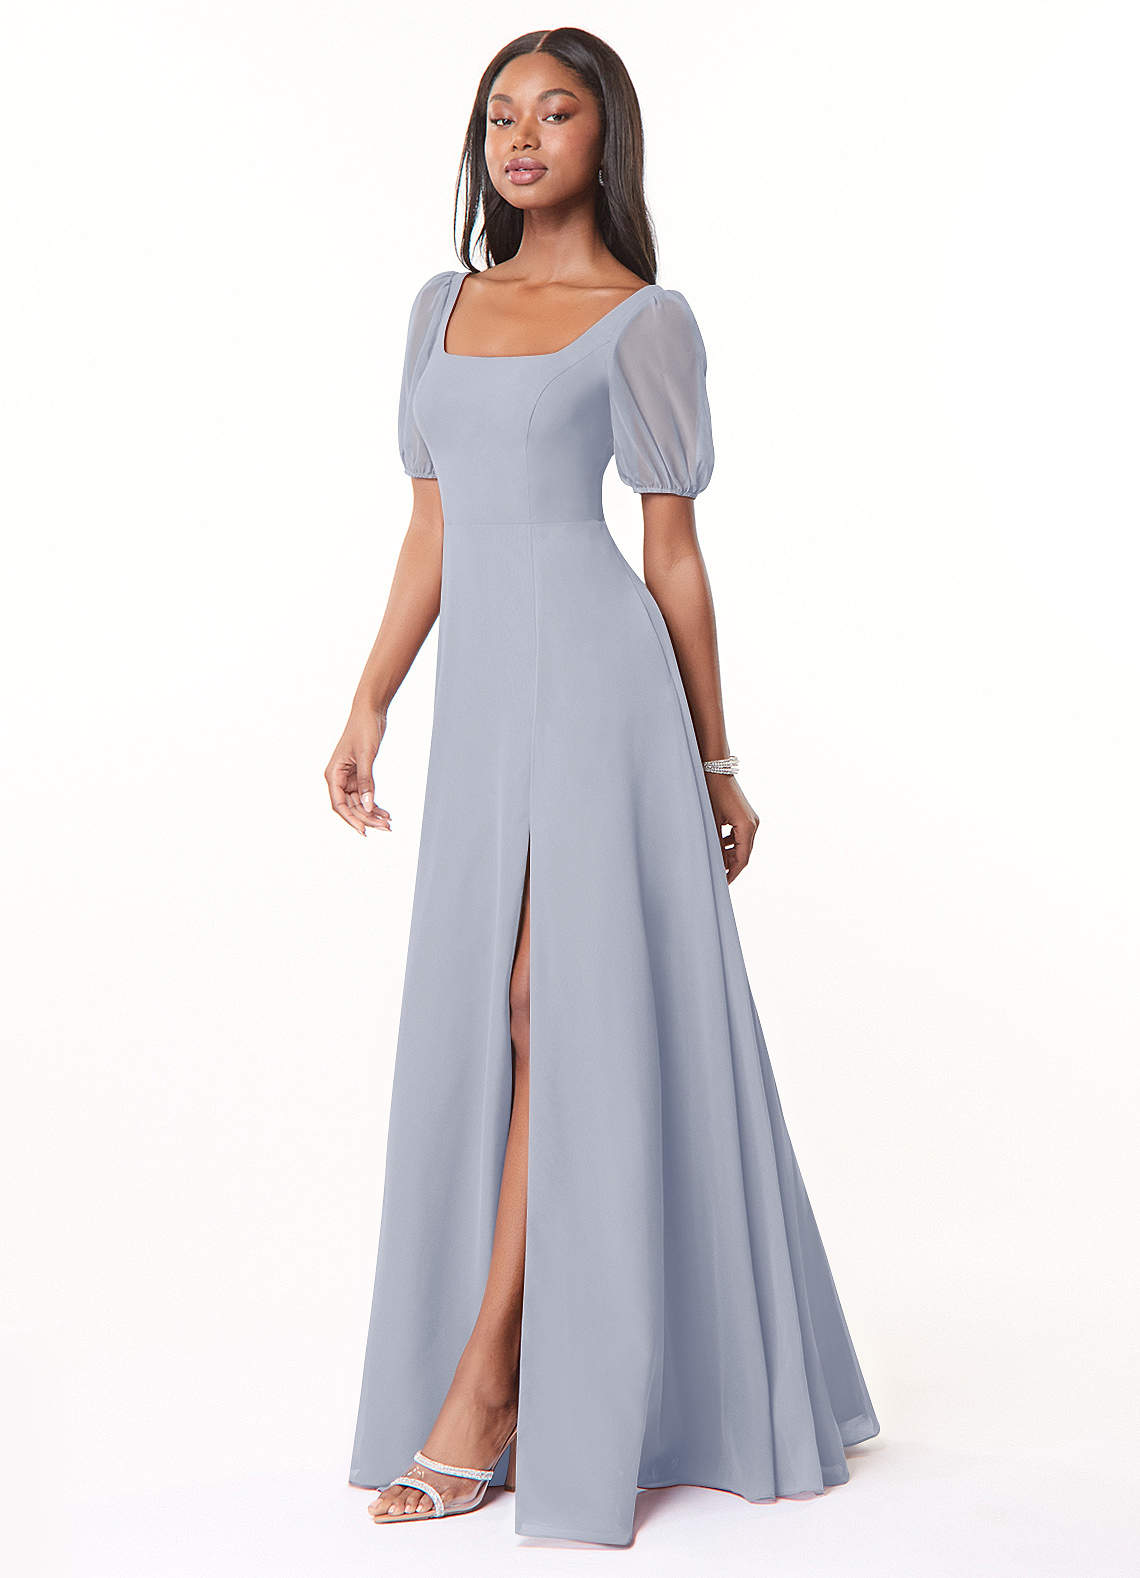 Azazie Alani Bridesmaid Dresses A-Line Square Neckline Chiffon Floor-Length Dress image1